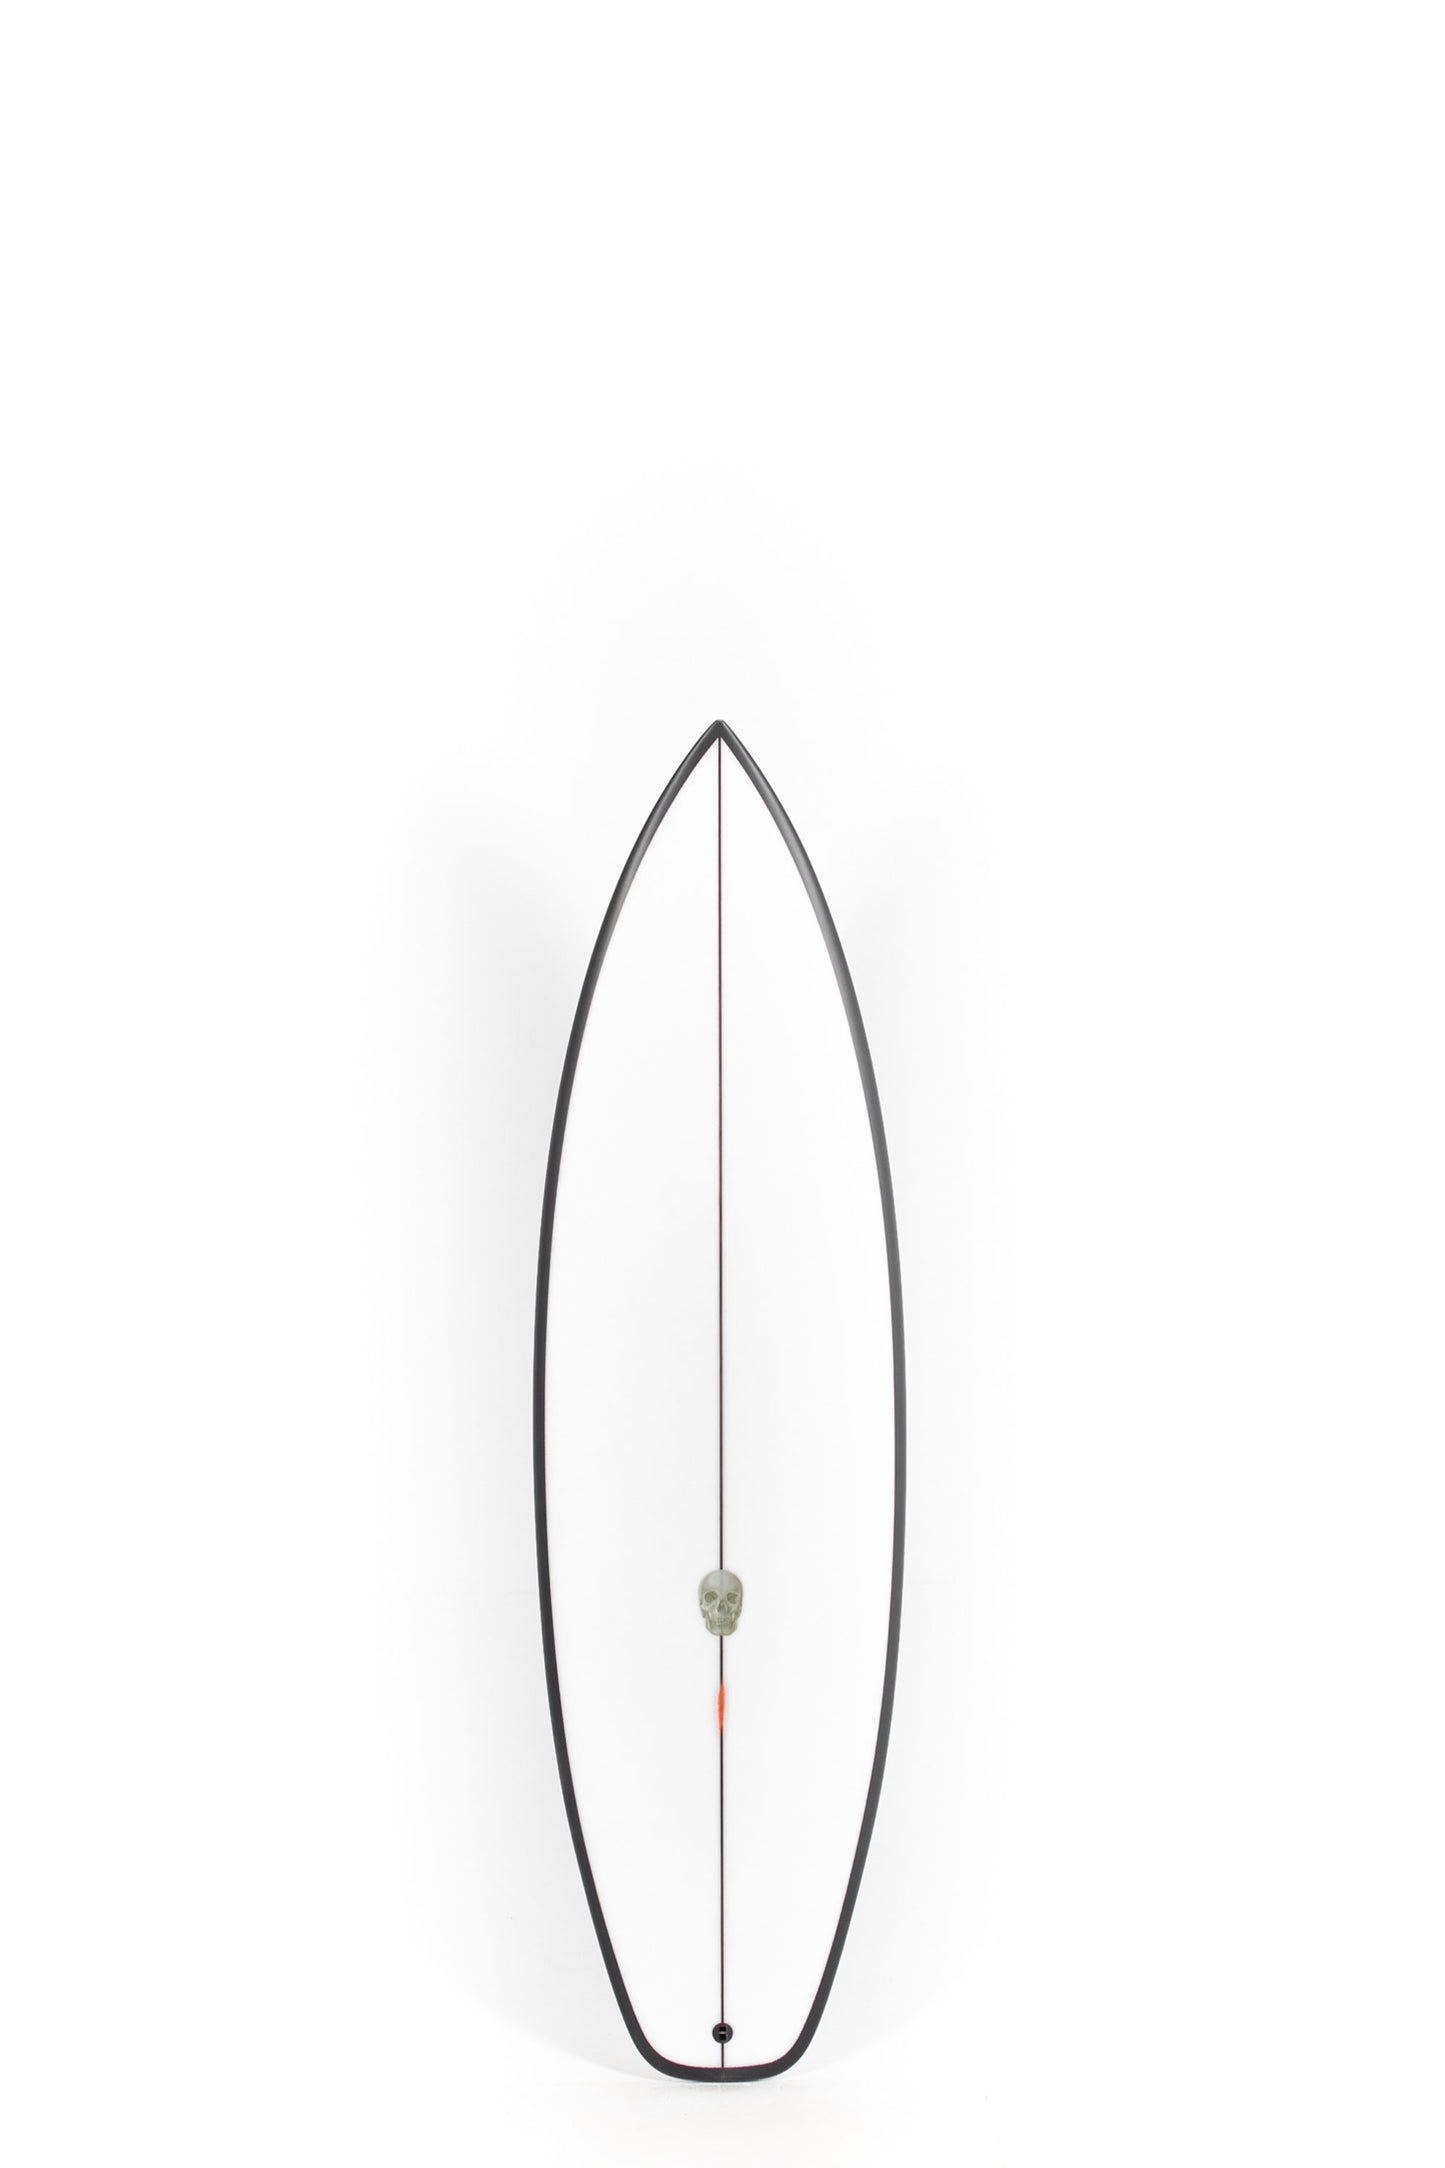 Pukas Surf Shop - Christenson Surfboards - OP2 - 5'9" x 19 3/8 x 2 3/8 x 28.26L - CX04806